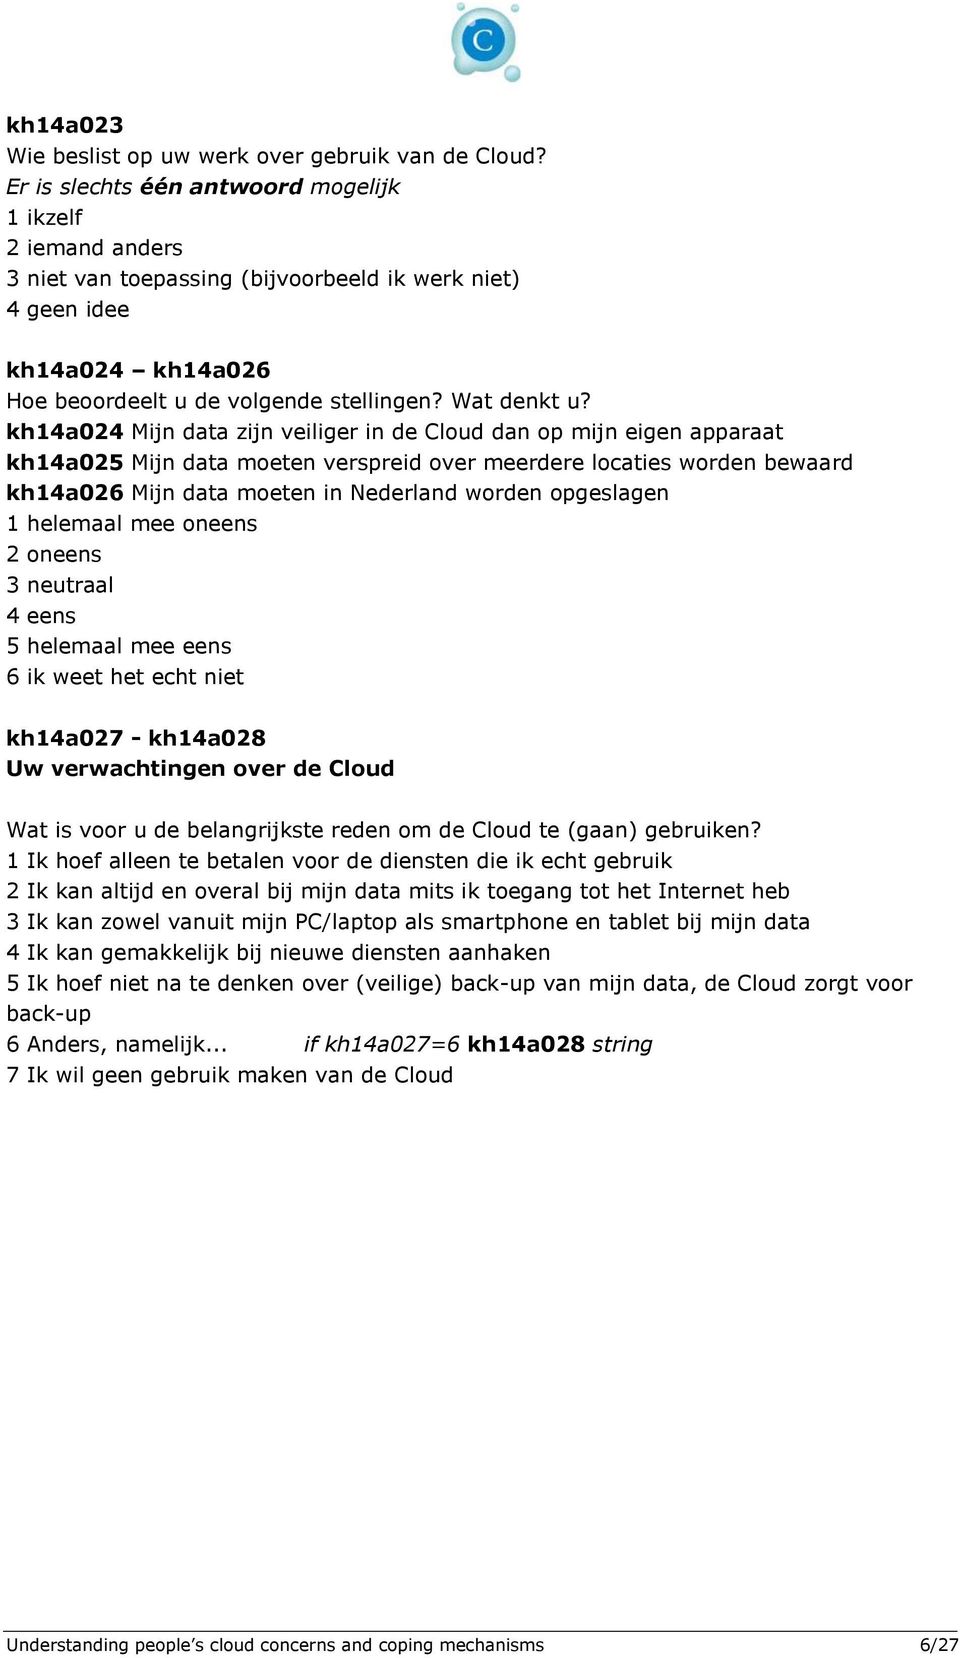 kh14a024 Mijn data zijn veiliger in de Cloud dan op mijn eigen apparaat kh14a025 Mijn data moeten verspreid over meerdere locaties worden bewaard kh14a026 Mijn data moeten in Nederland worden